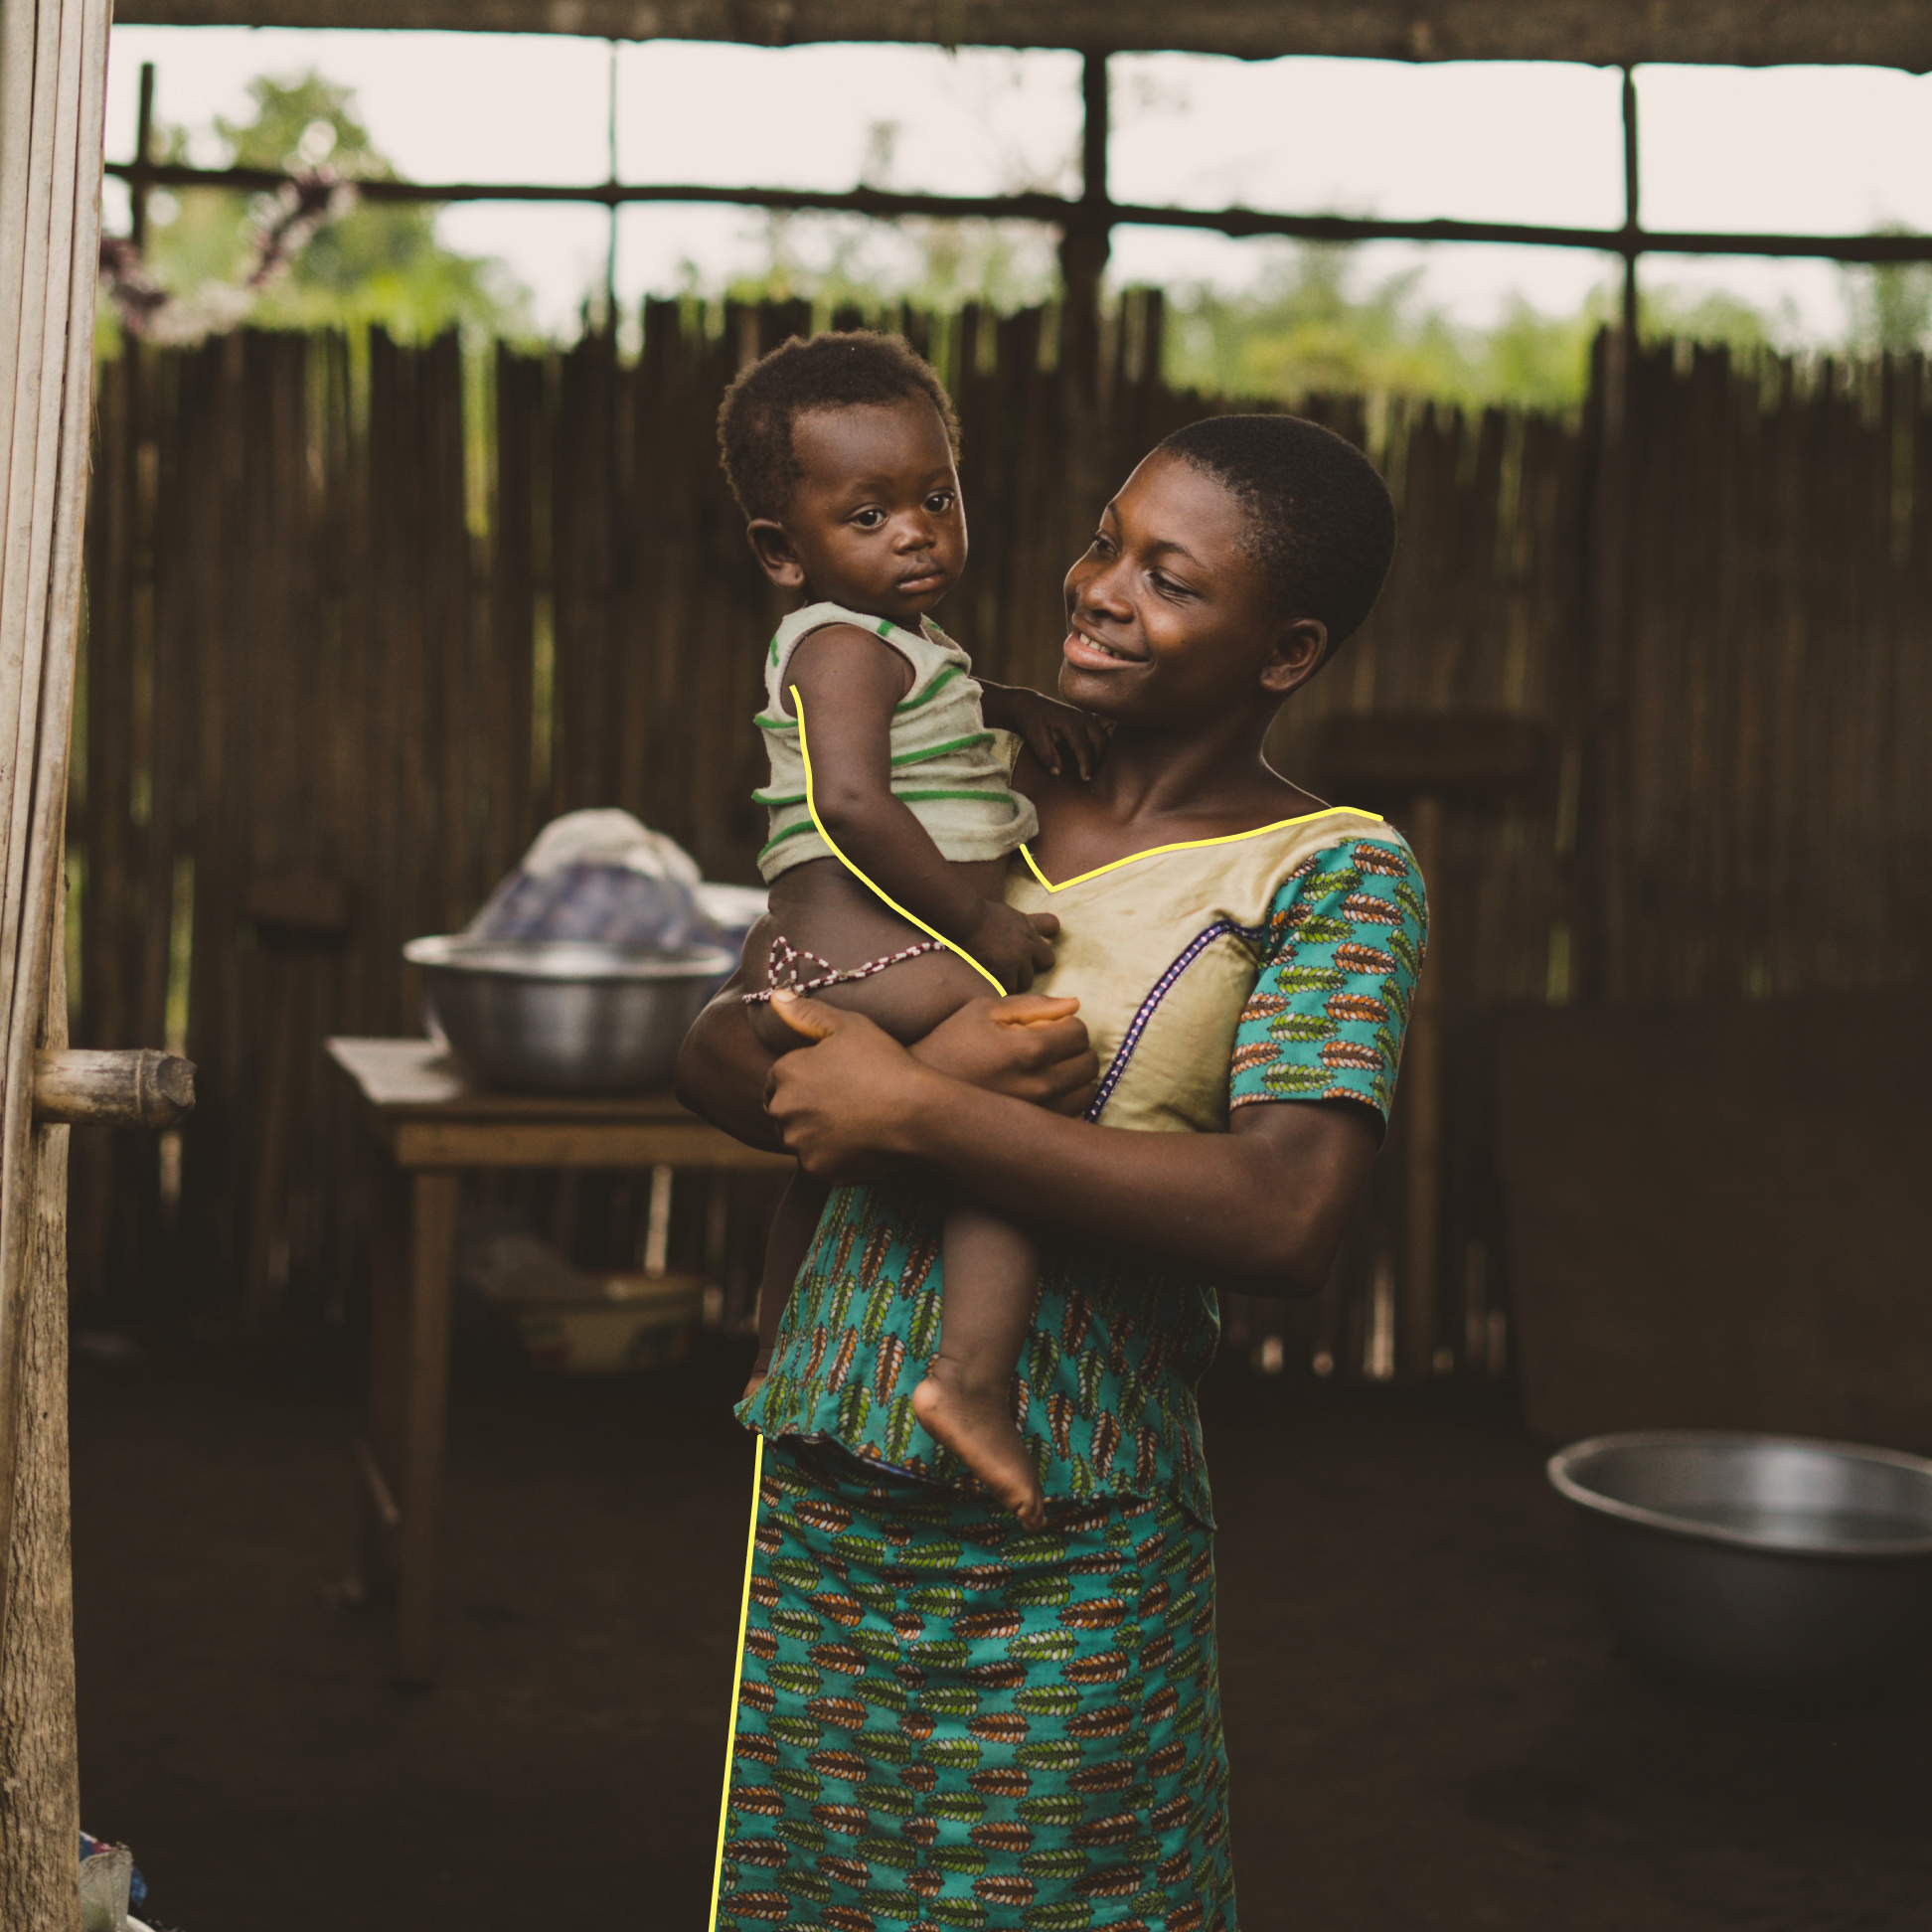 Eine afrikanische Mutter in traditioneller Kleidung hält ein Kind und lächelt